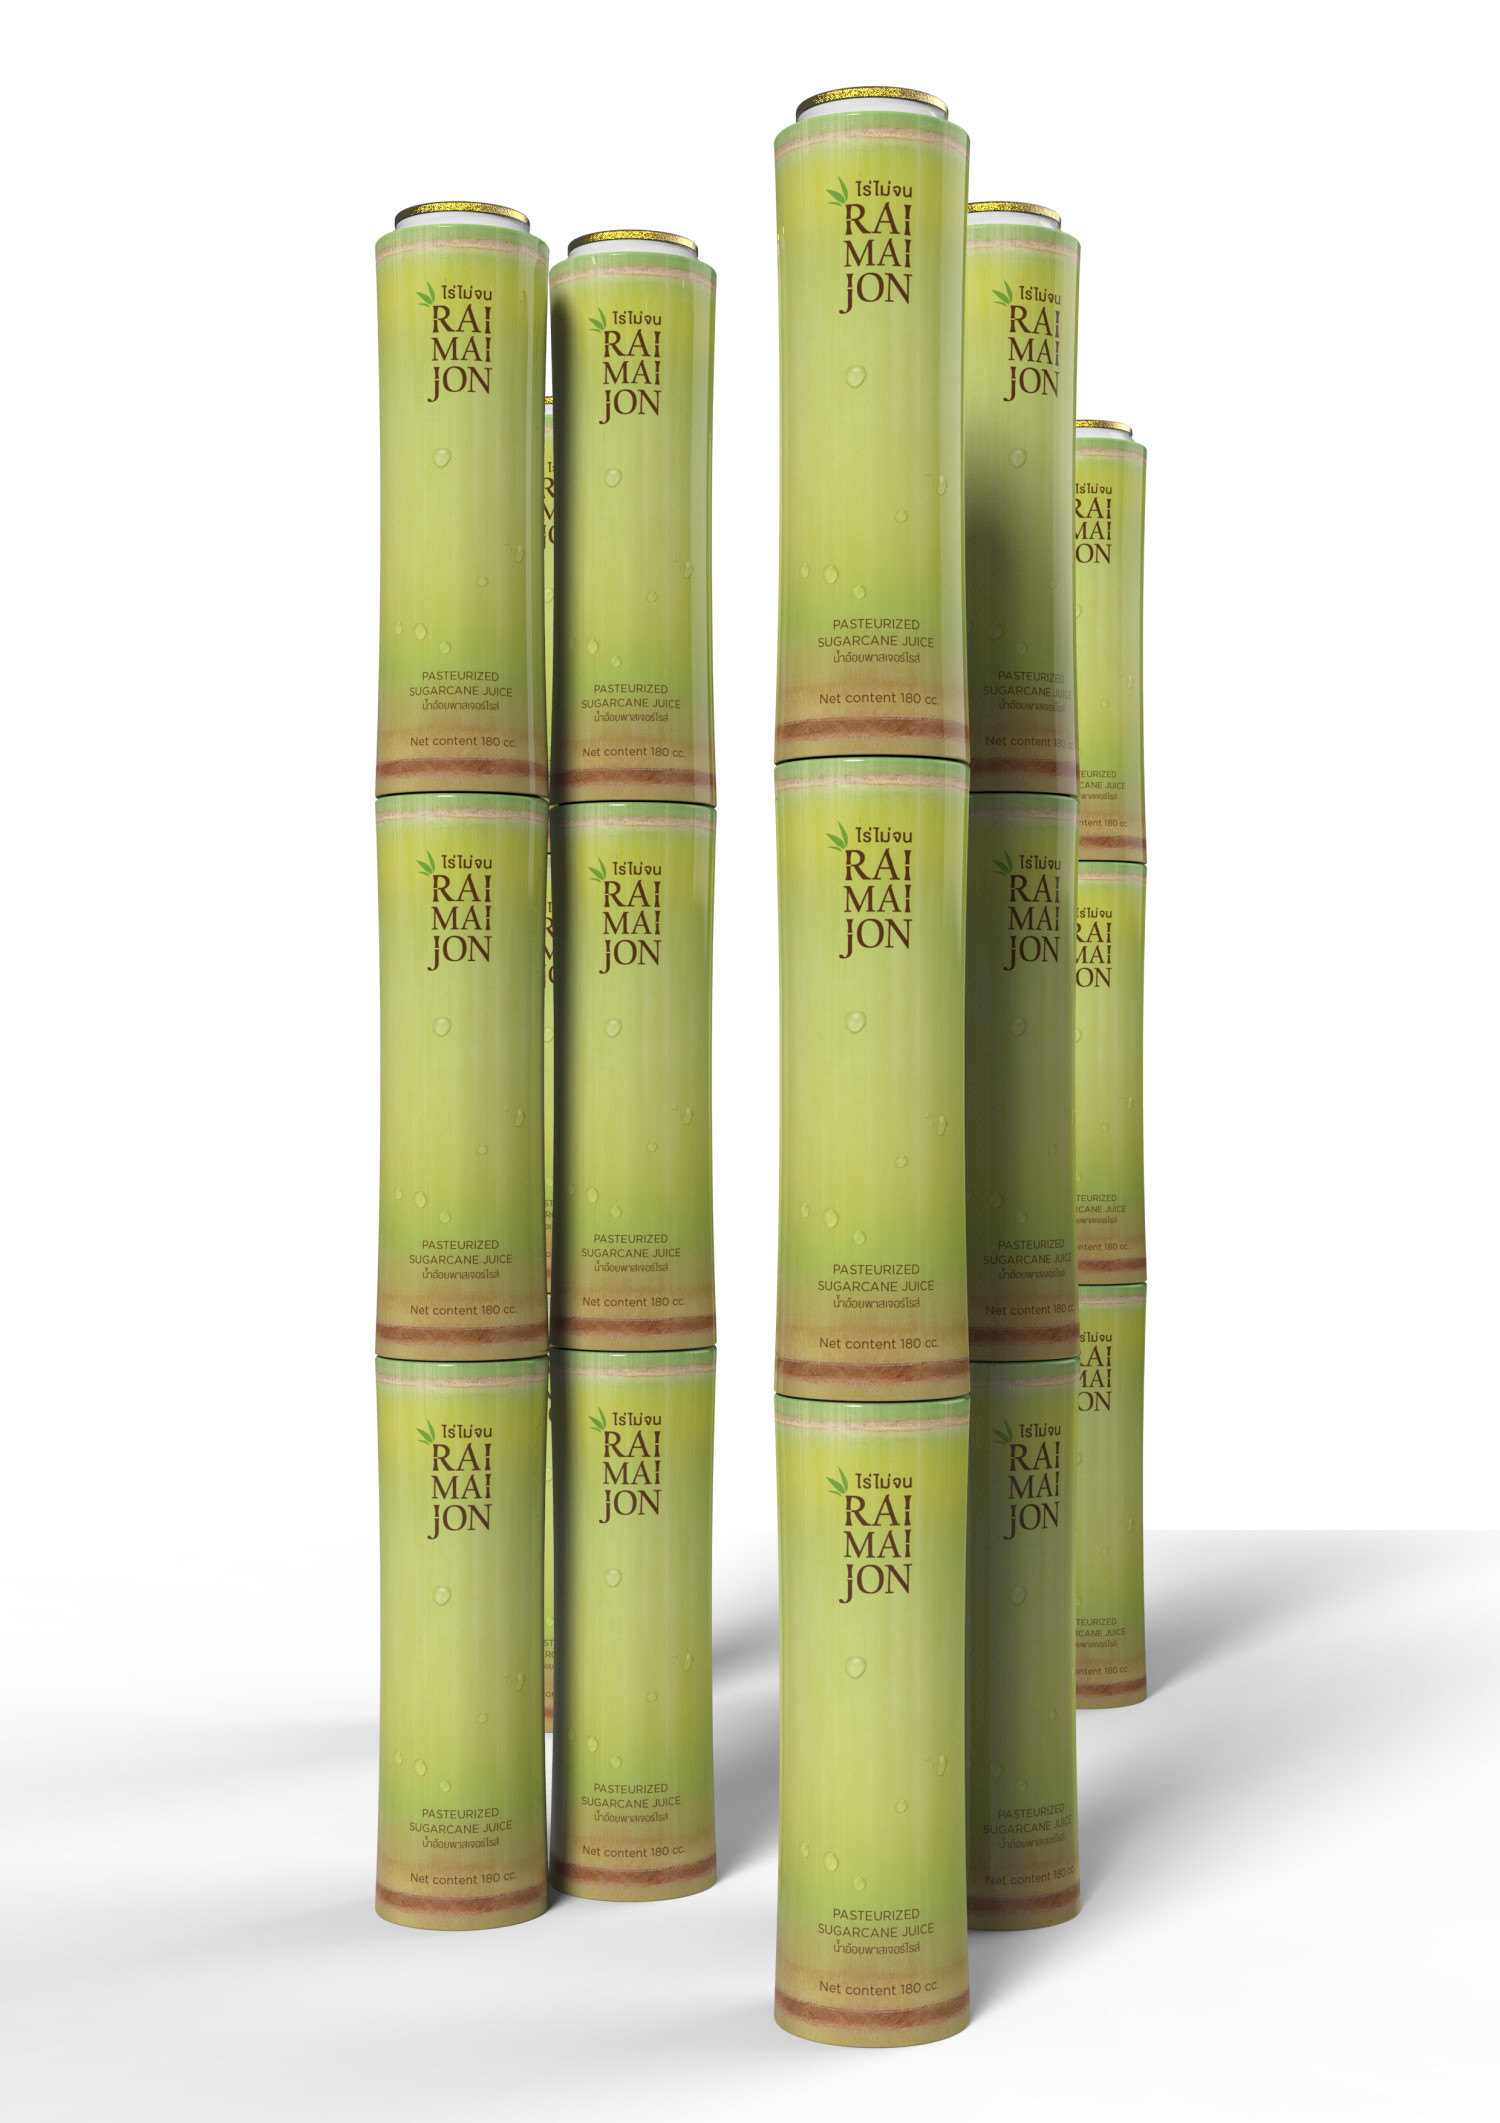 MUSE Design Winners - Raimaijon Sugarcane Juice